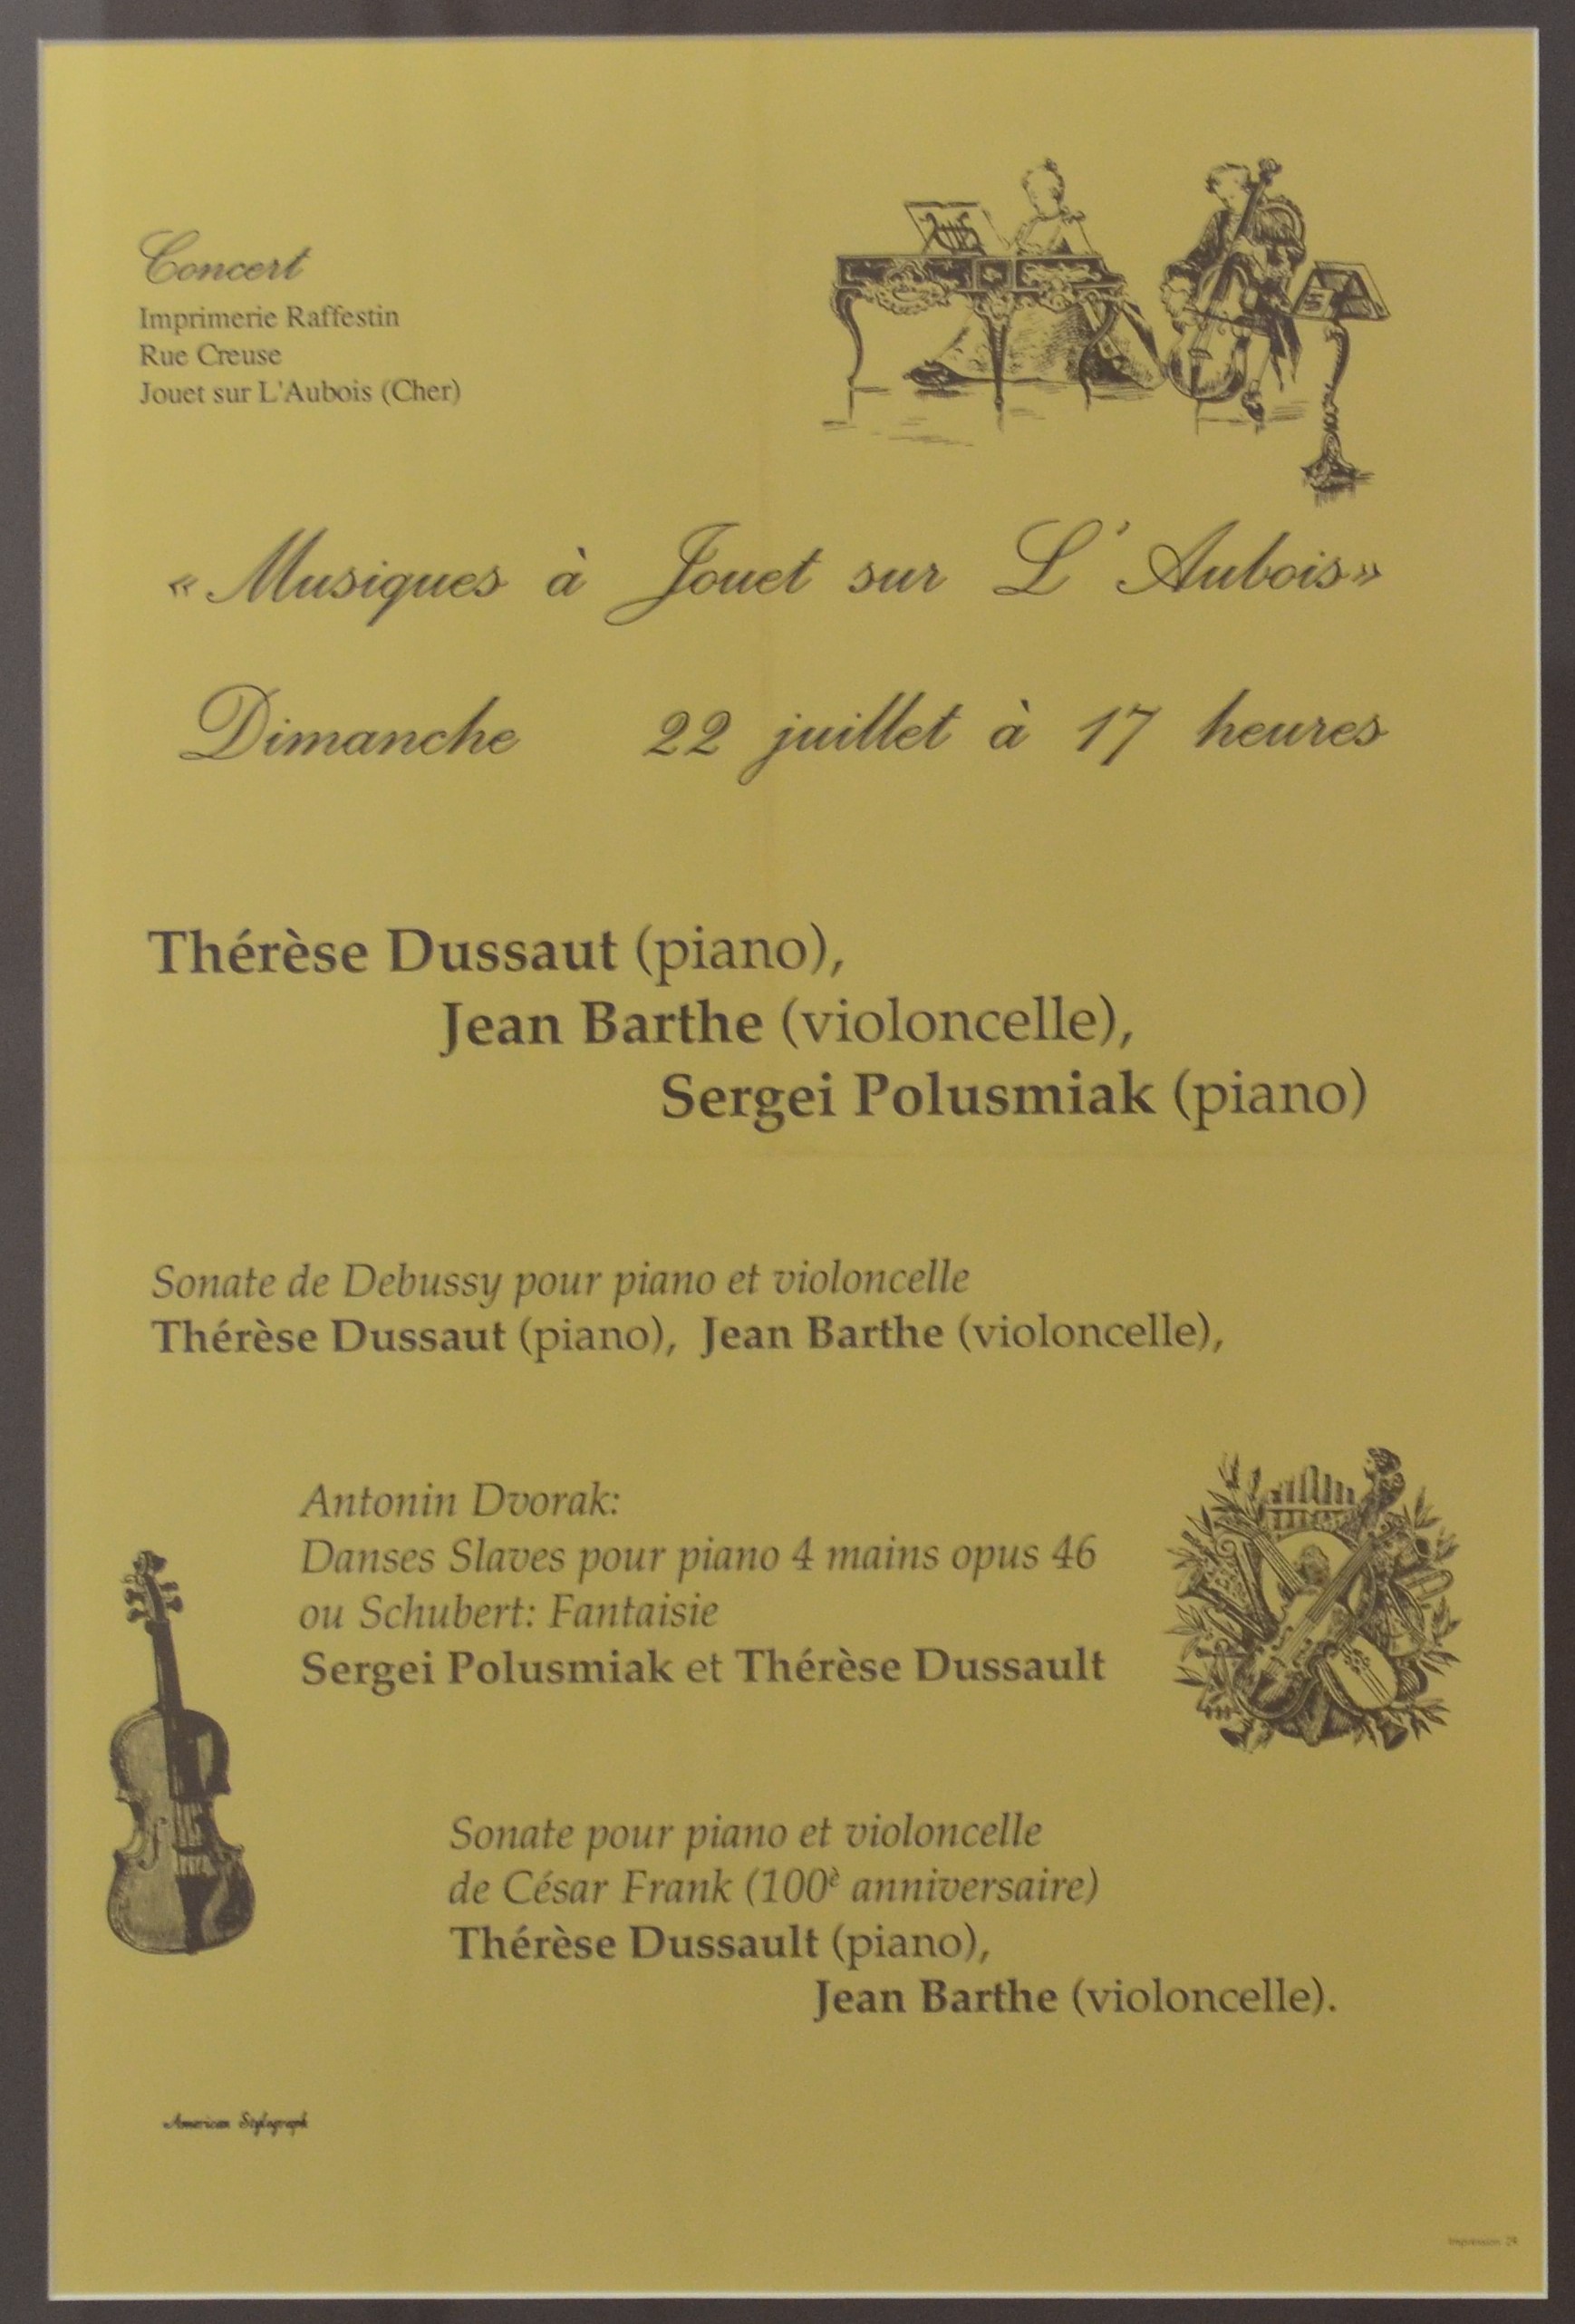 Sergei Polusmiak's French Concert Poster